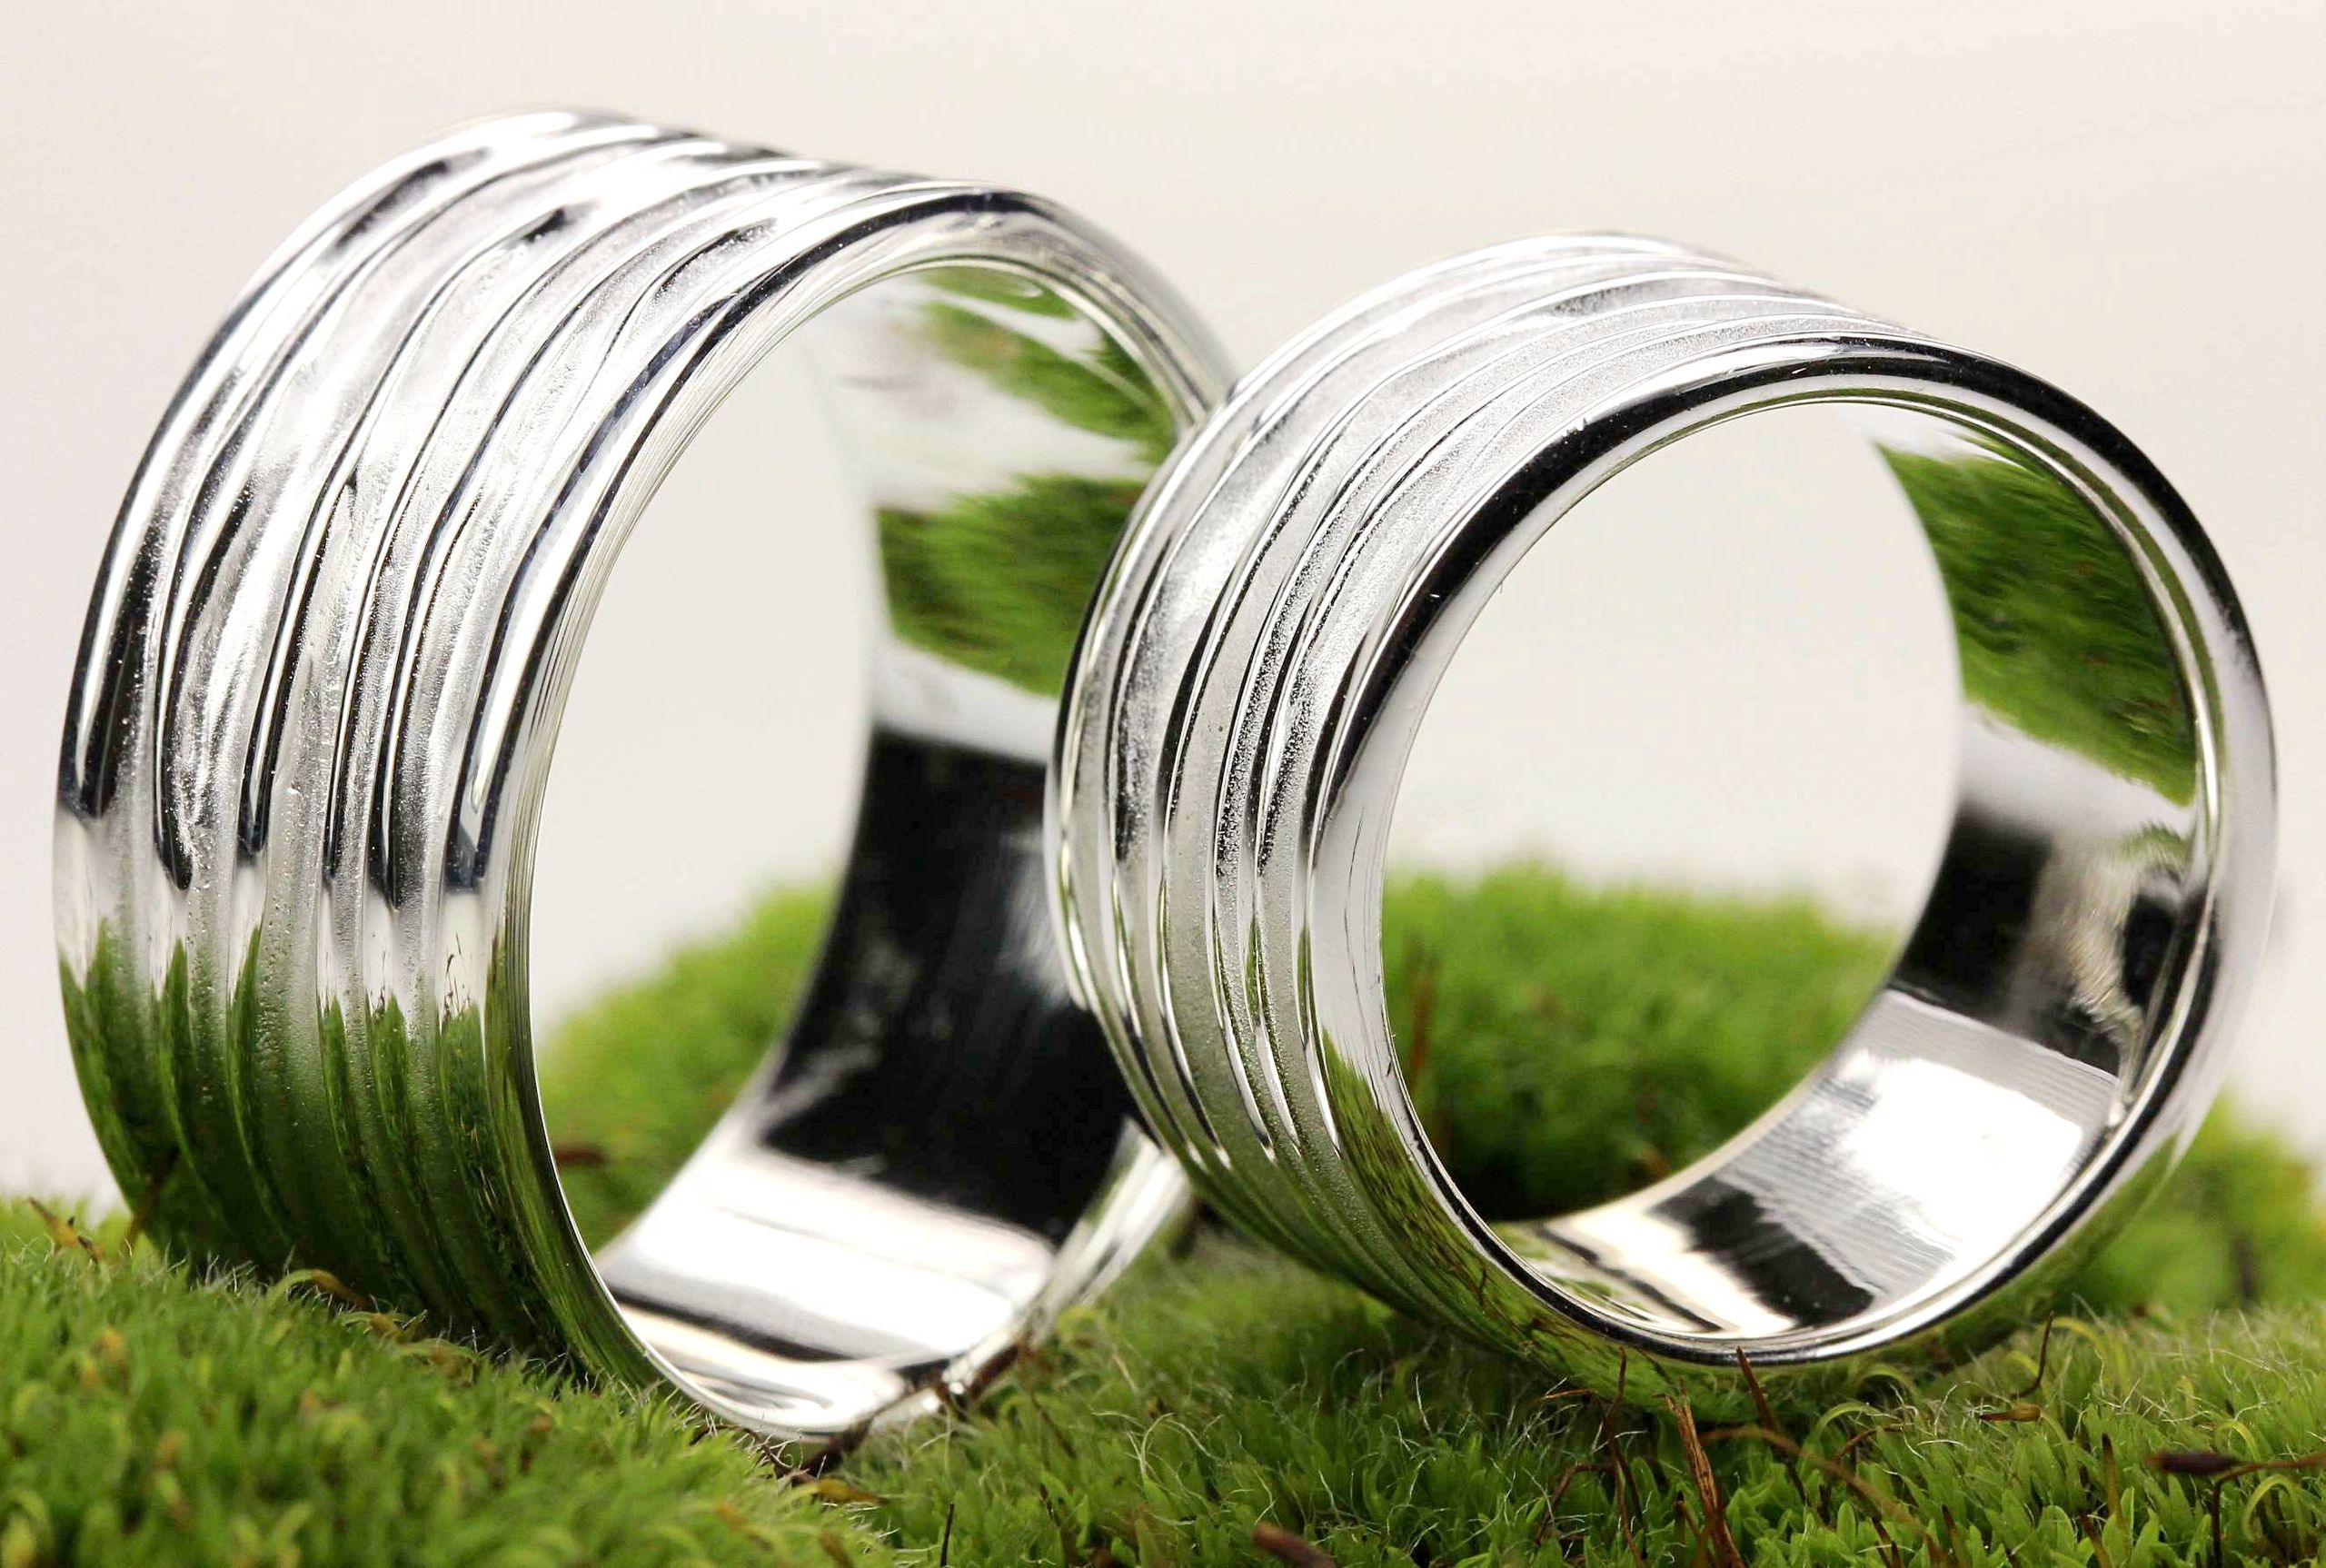 Zwei breite Silberringe mit einer gefalteten Wellenstruktur als Oberfläche. Der Ring bietet sich als Schmuck für Damen und für Herren an, daher ist er hier im Bild als Partnerring in Szene gestzt.